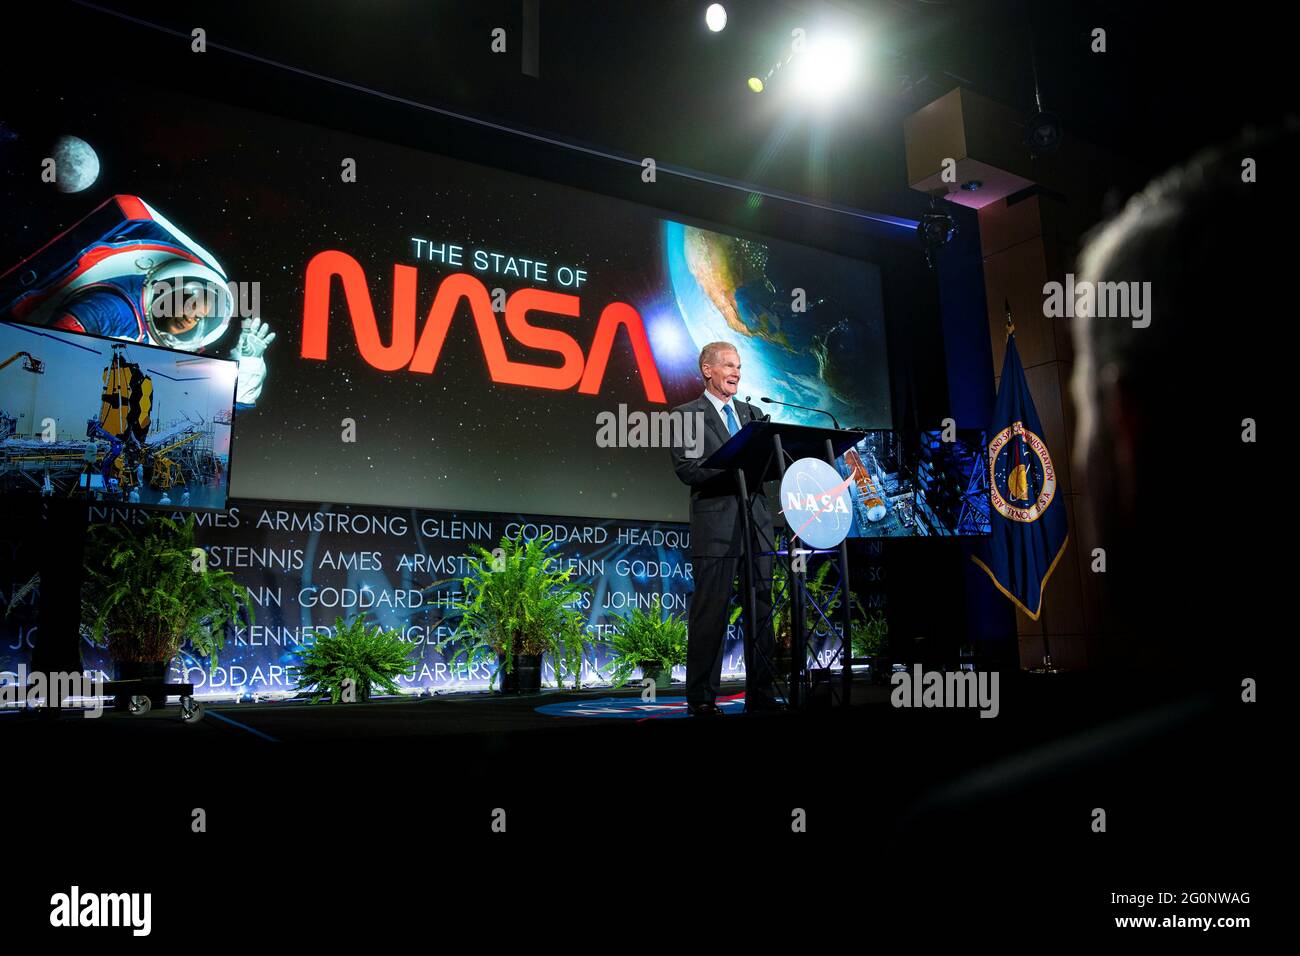 Bill Nelson, administrateur de la NASA, parle lors d'un discours sur l'état de la NASA, alors qu'il annonce les nouvelles missions SPATIALES DAVINCI+ et VERITAS pour étudier Vénus, au siège de la NASA à Washington, aux États-Unis, le 2 juin 2021. REUTERS/Al Drago Banque D'Images